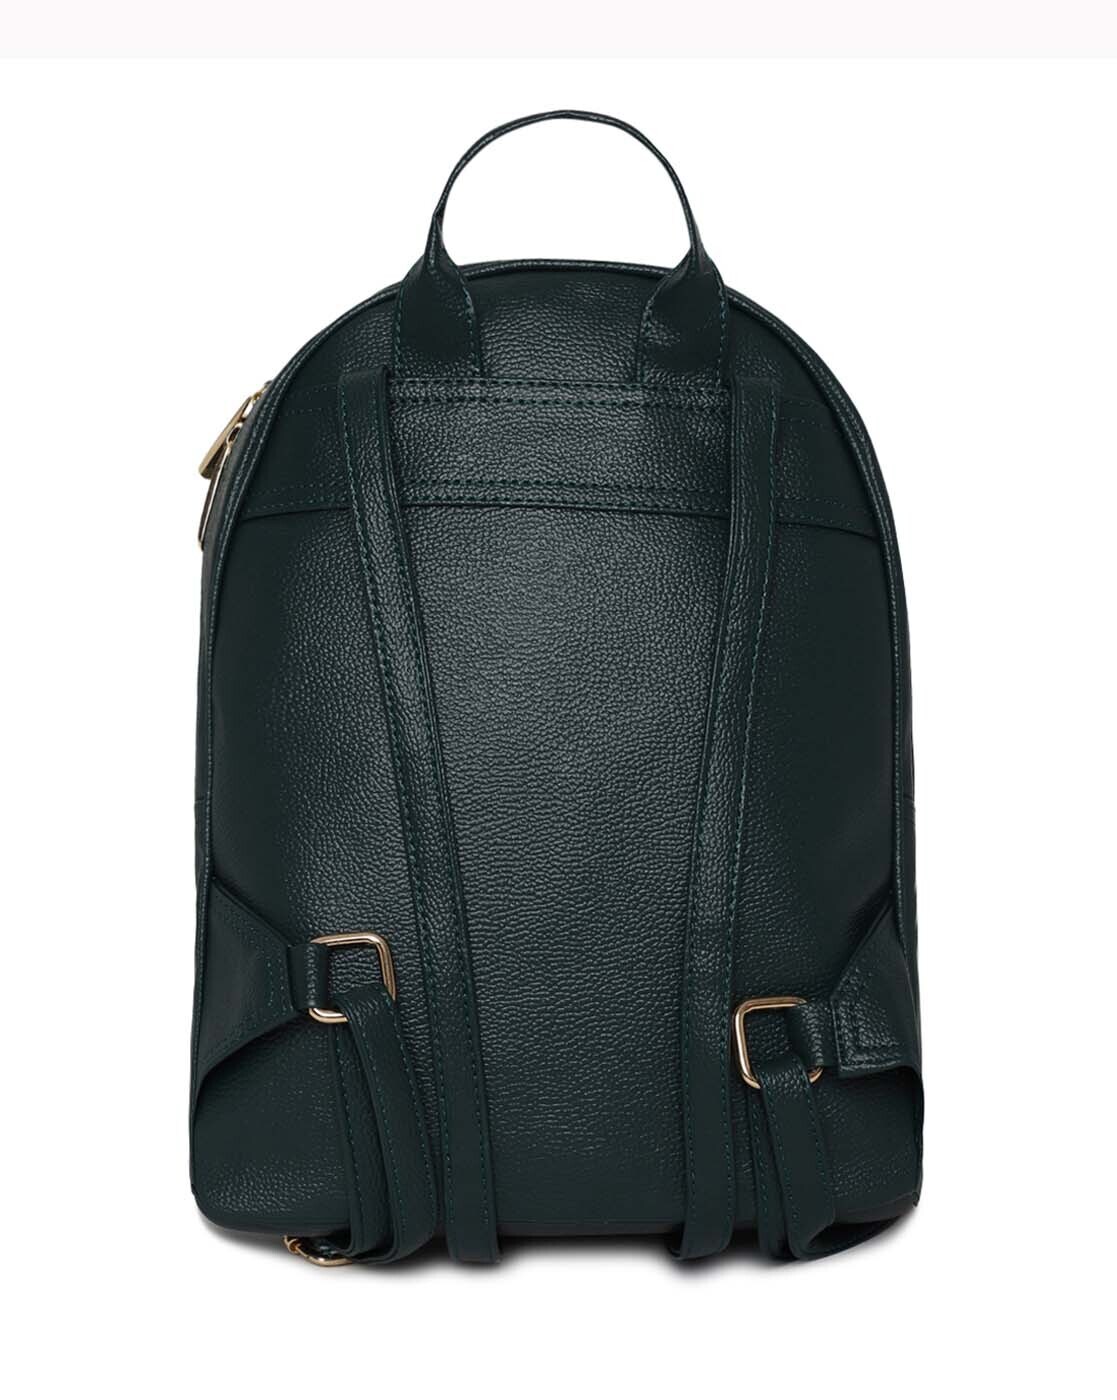 Buy Women Green Casual Backpack Online - 701403 | Allen Solly